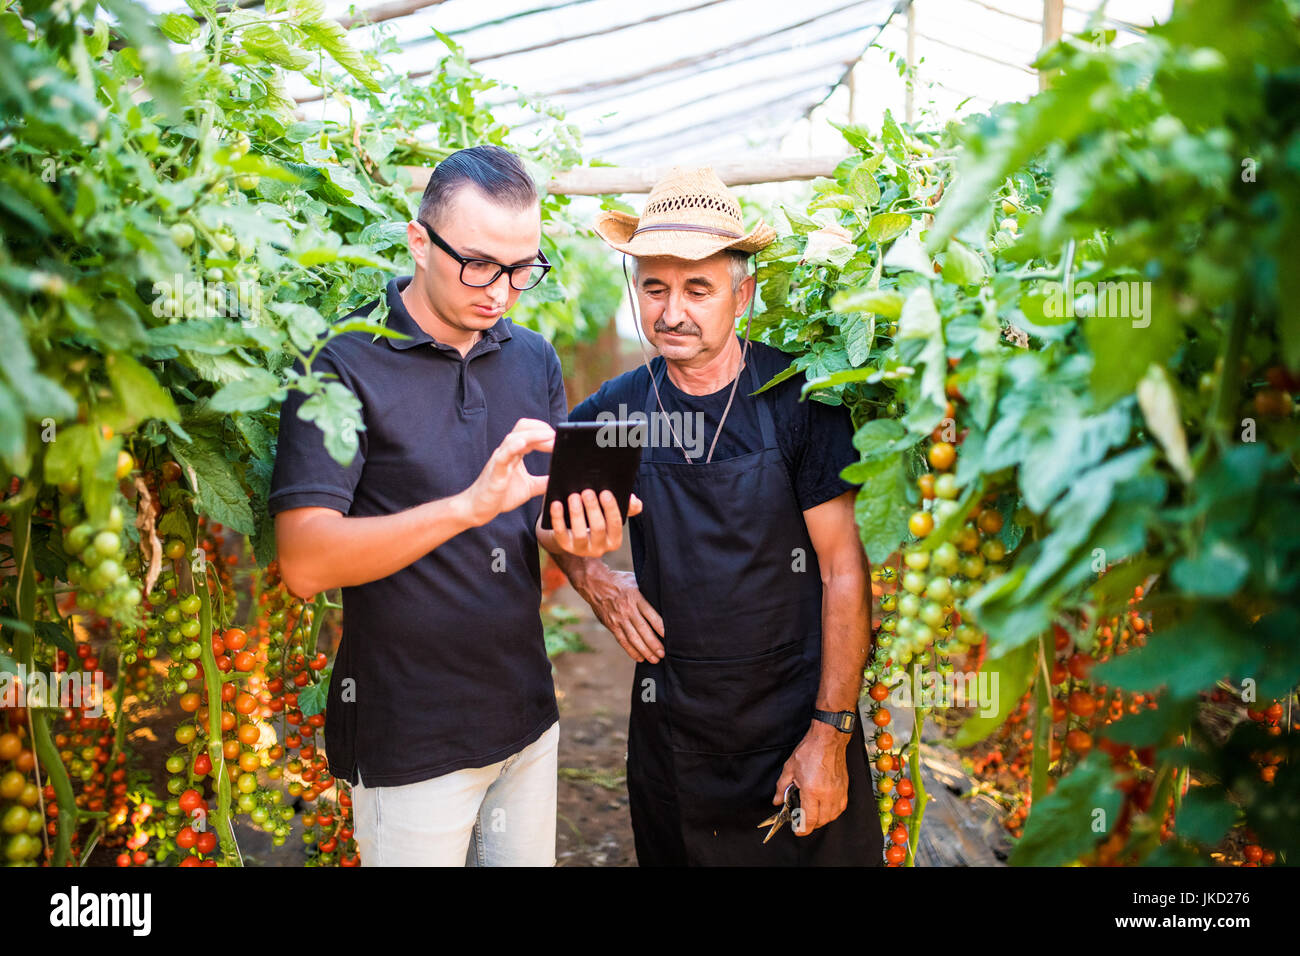 Zwei Landwirtschaft Landwirt Arbeiter Ckecking Bestellungen von Cherry-Tomate auf Tablet von Kunden im Gewächshaus. Landwirtschaft-Geschäft. Landwirtschaft Stockfoto